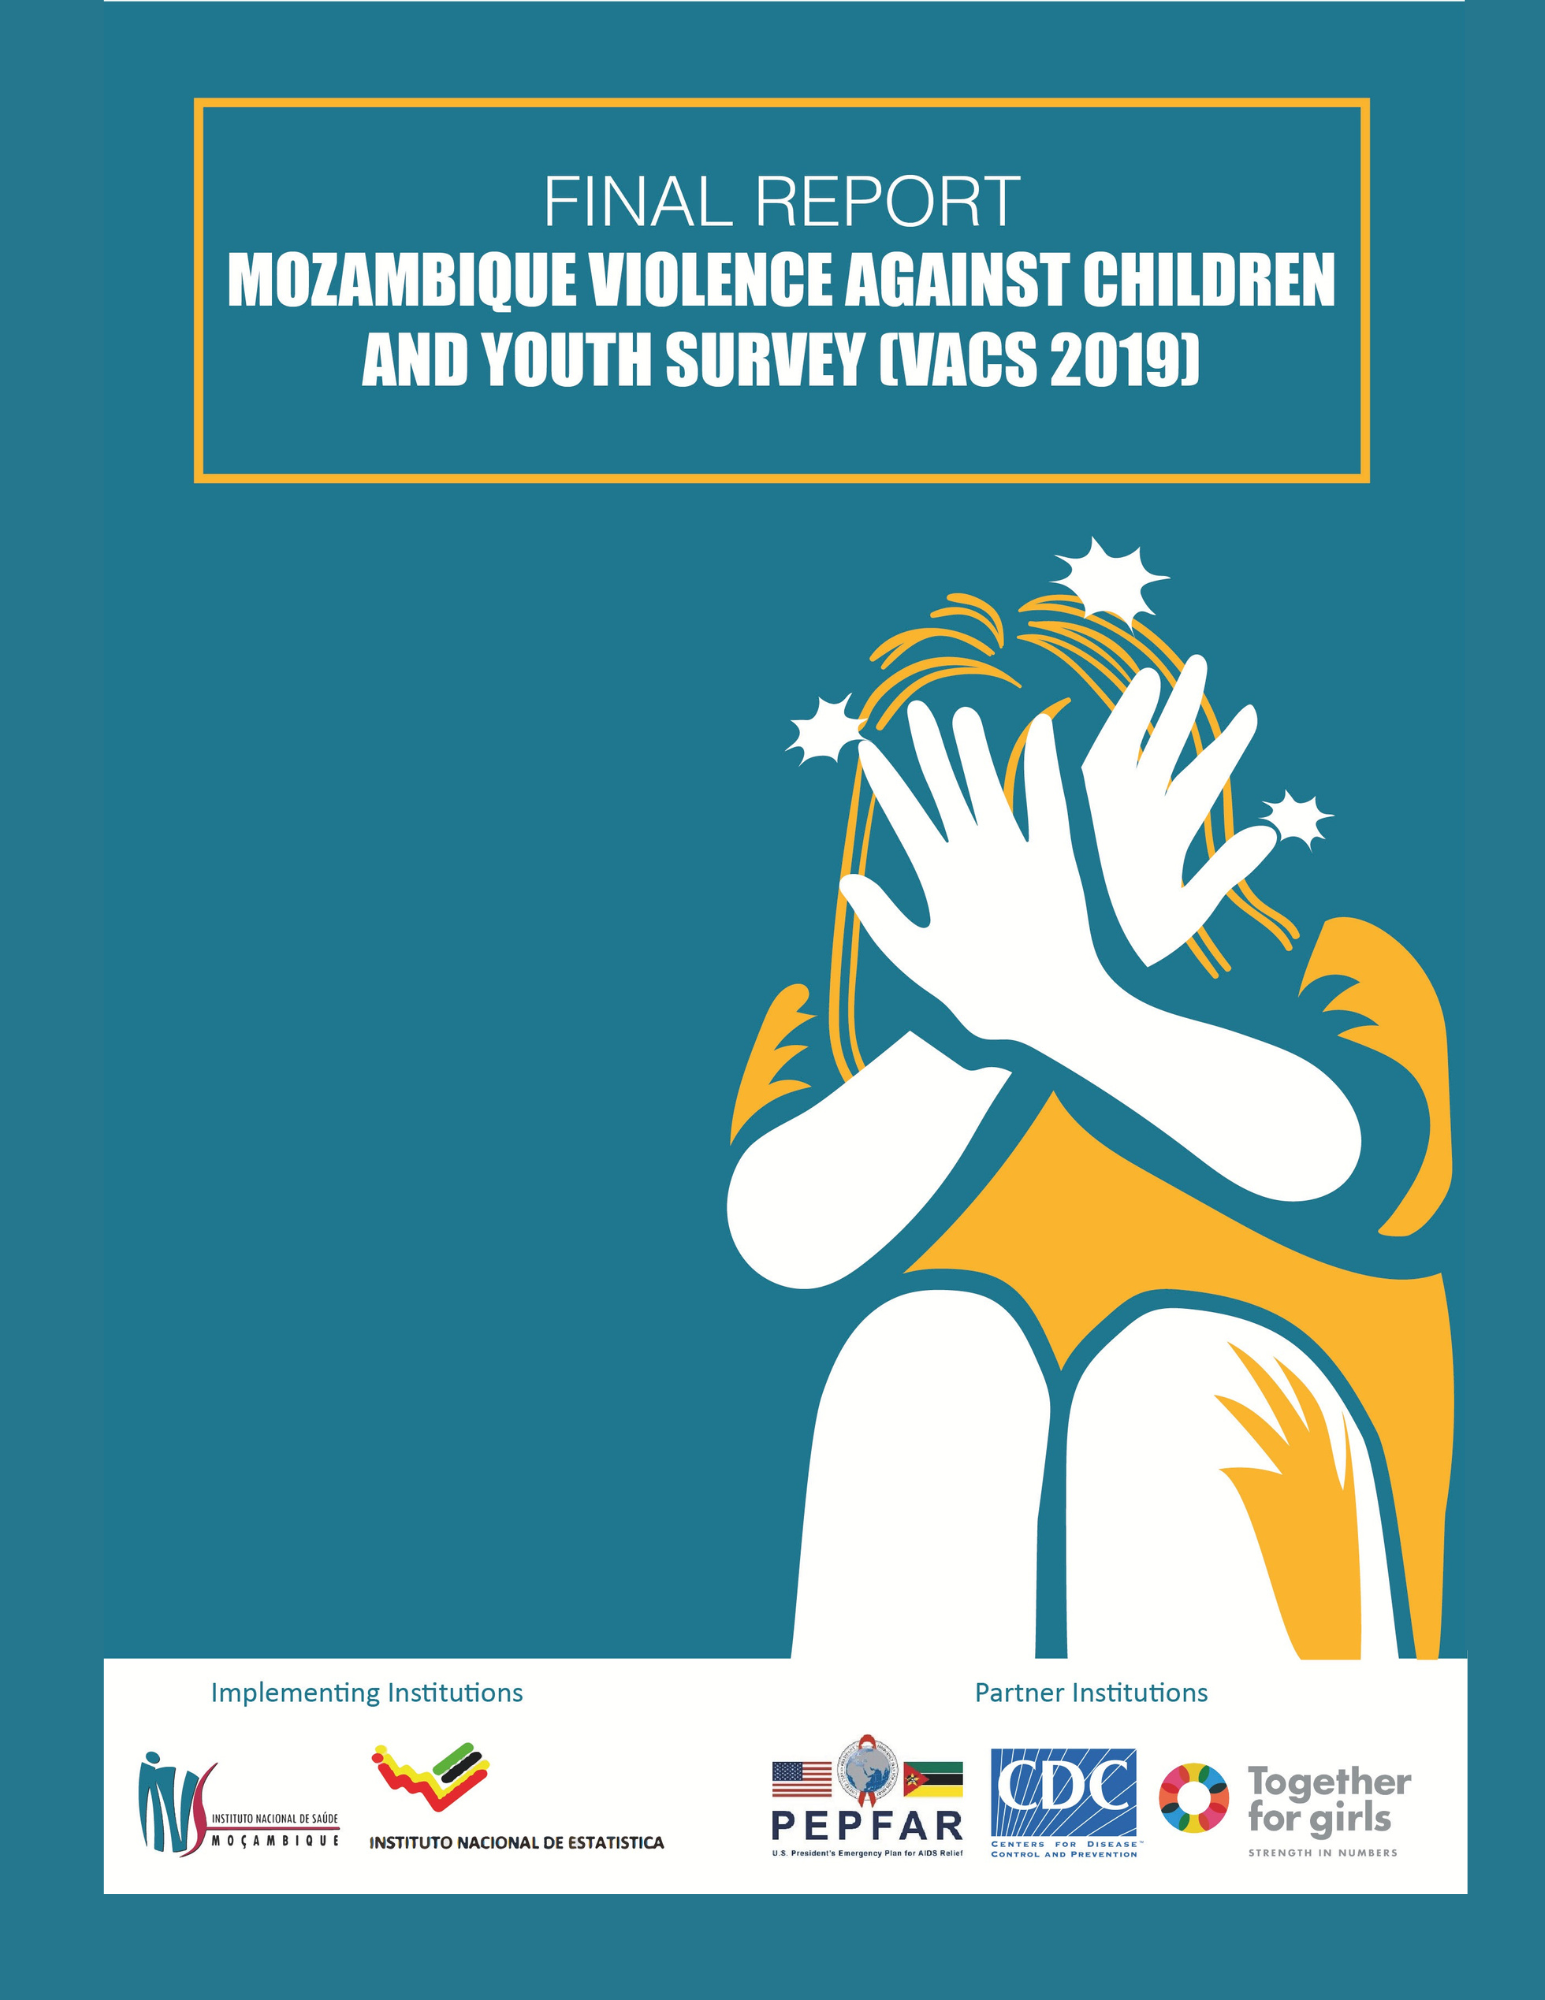 Mozambique VACS report